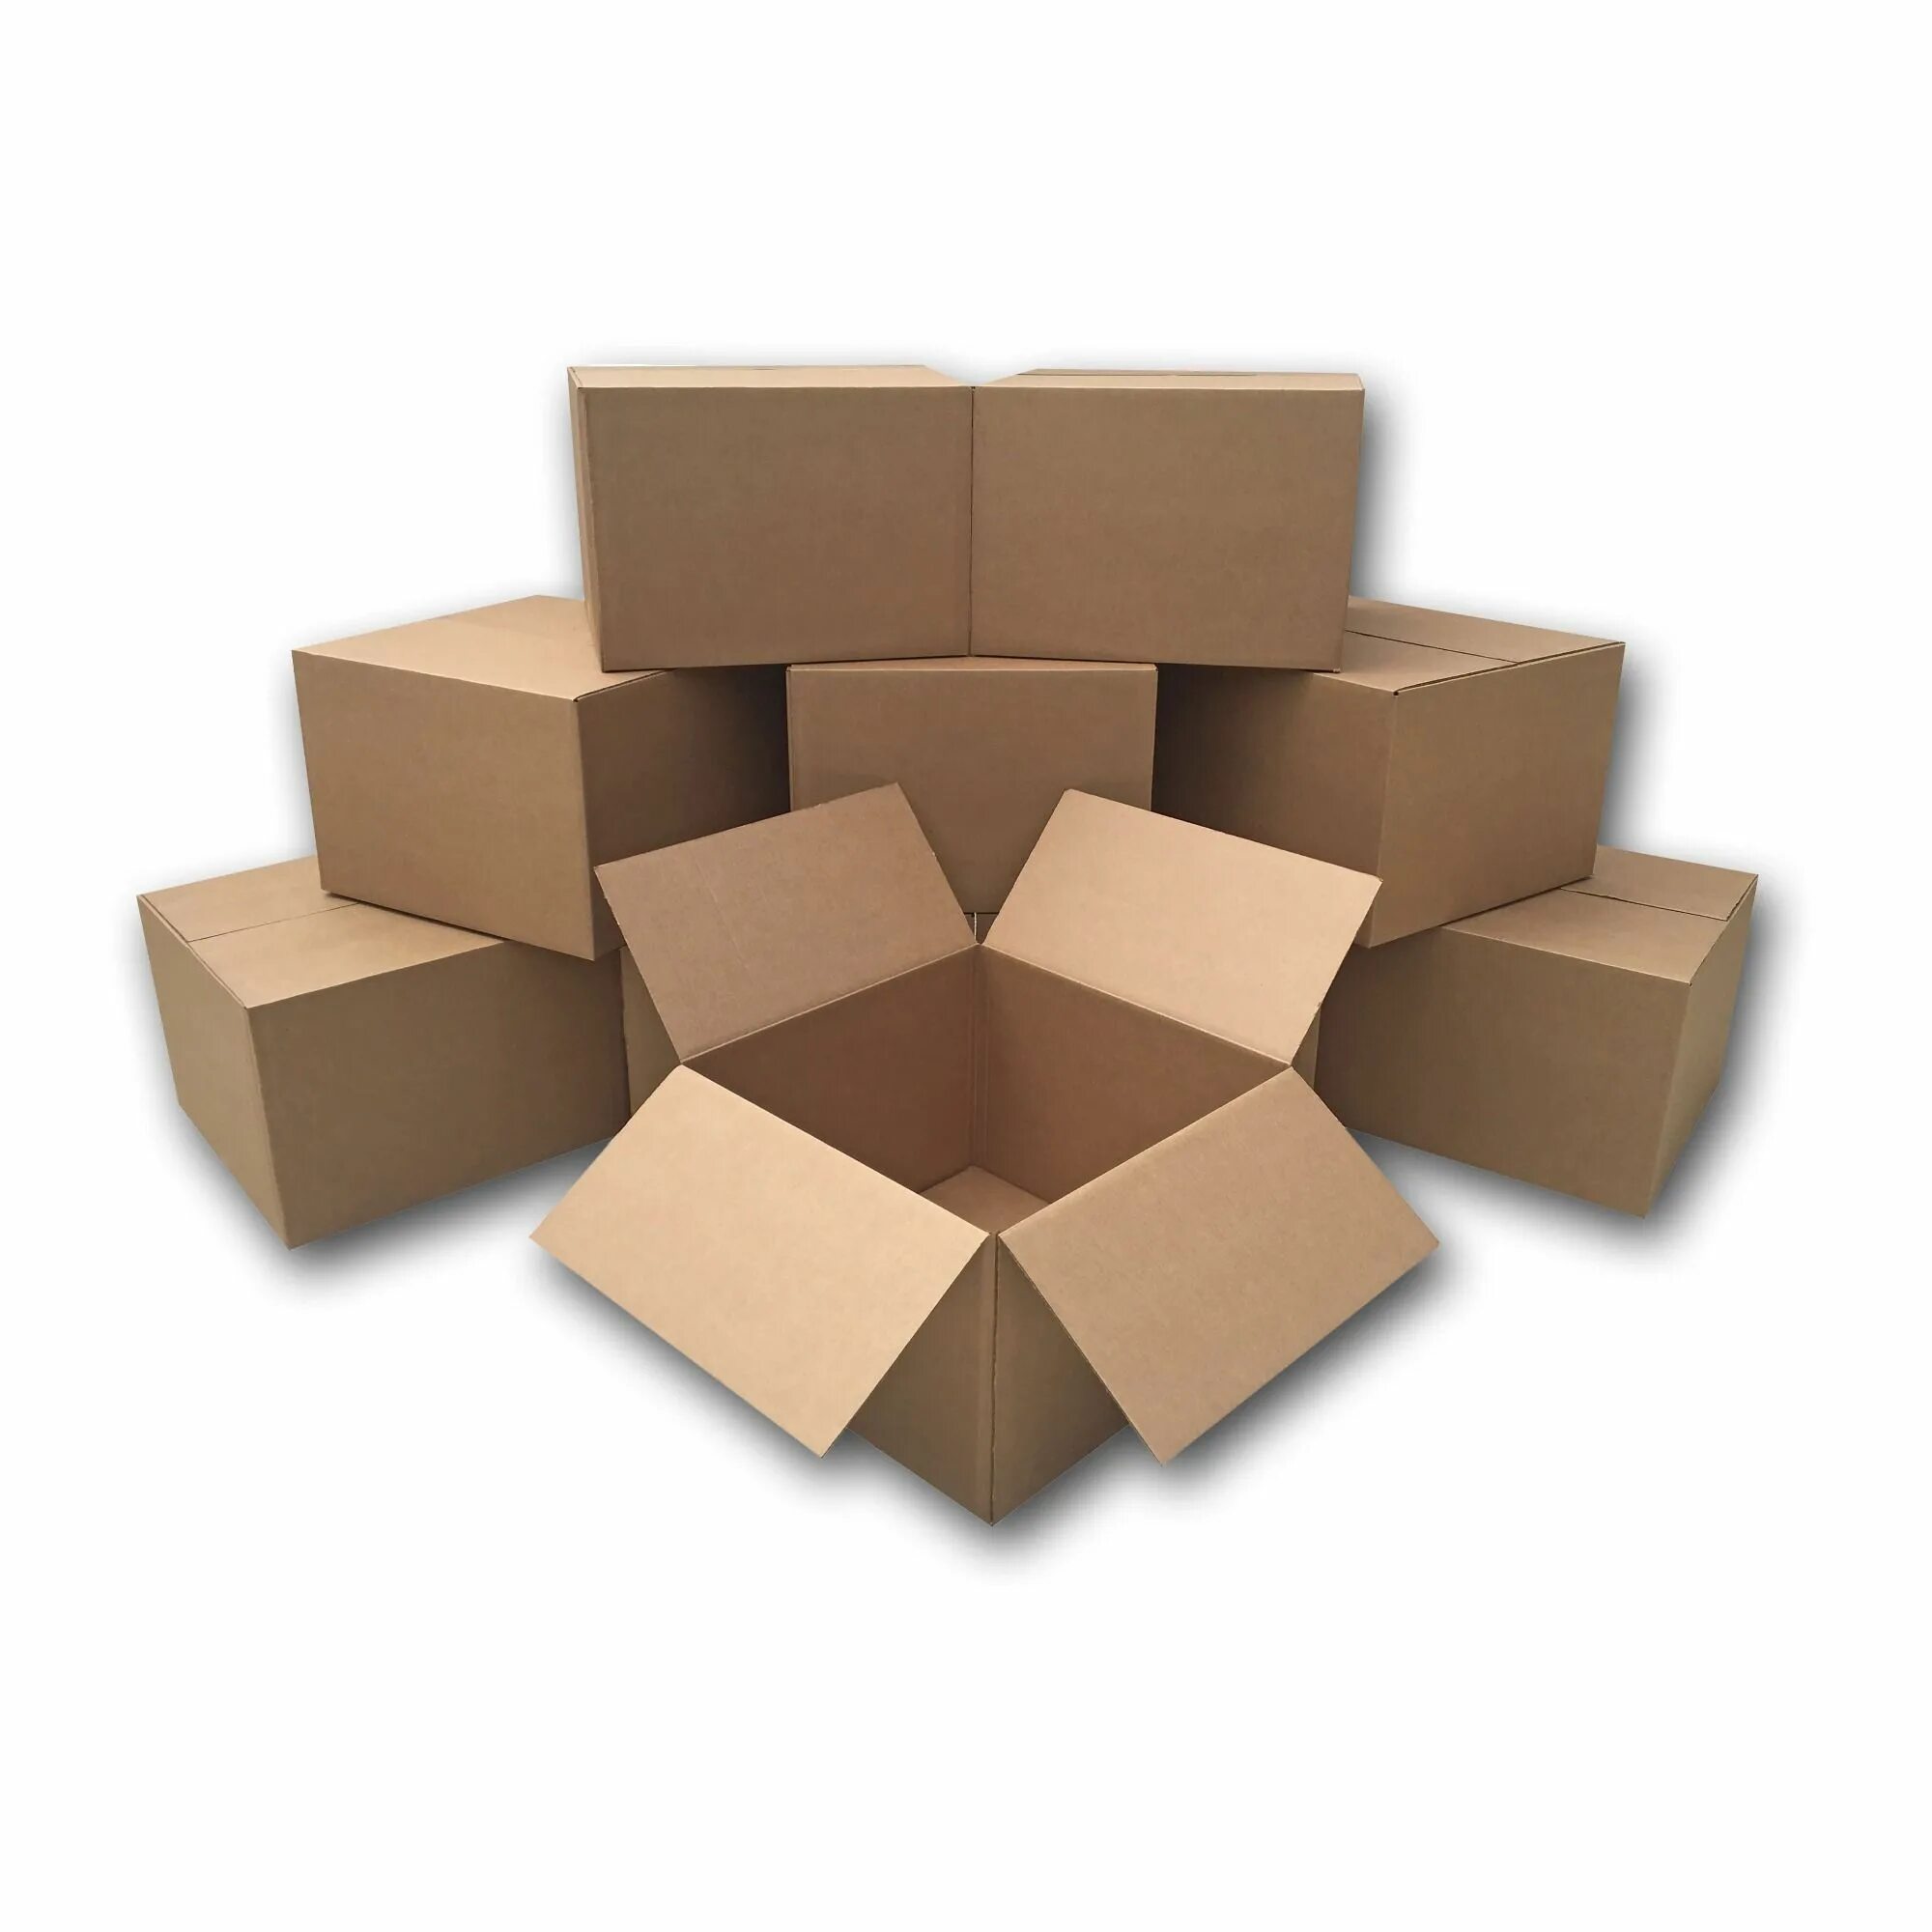 16 серых коробок на китайском. Бумажные коробки. Розовые картонные коробки. Длинная картонная коробка. Картонные коробки для транспортировки цветов.